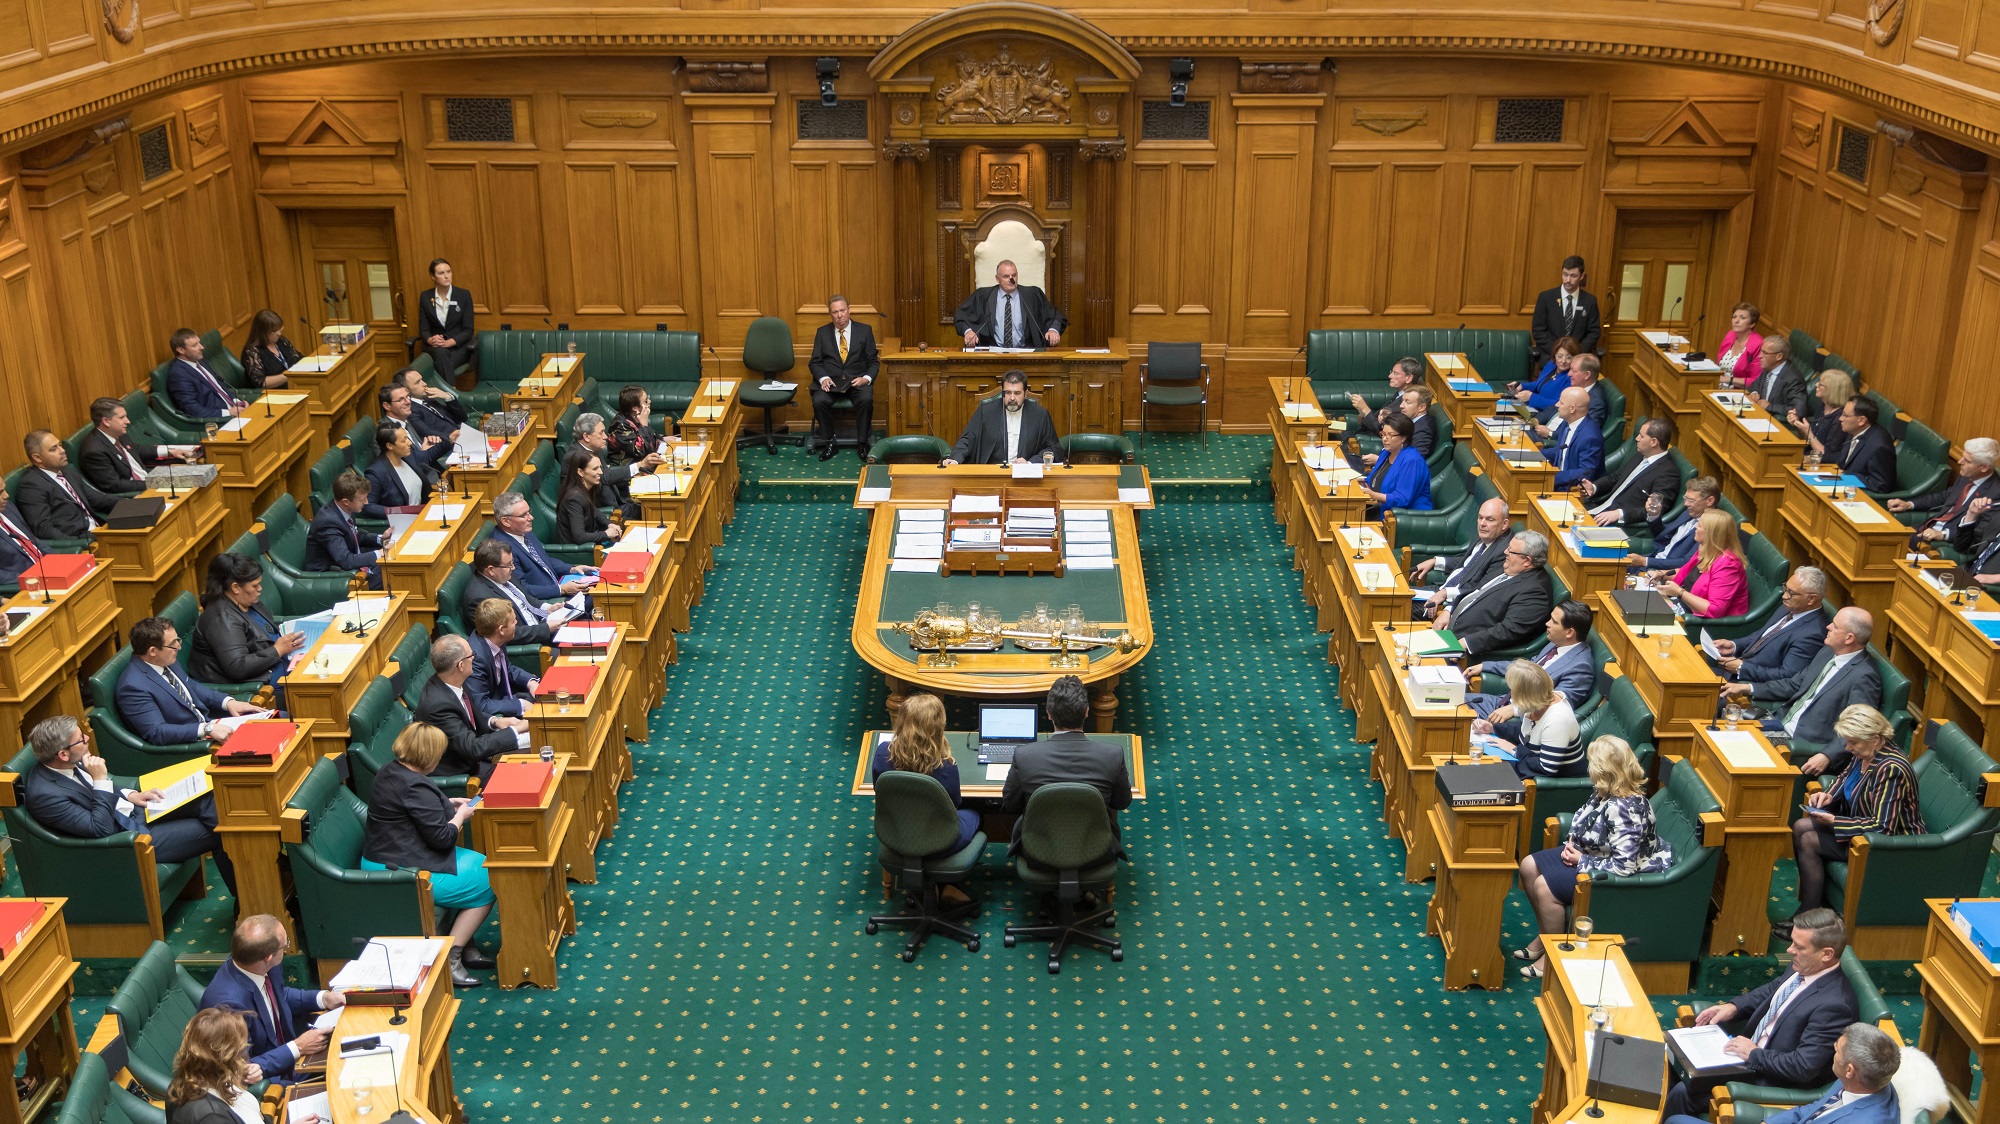 Партия представлена в парламенте страны. Однопалатный парламент новой Зеландии. Новая Зеландия правительство. Законодательная власть новой Зеландии. Парламент Бразилии здание парламента.